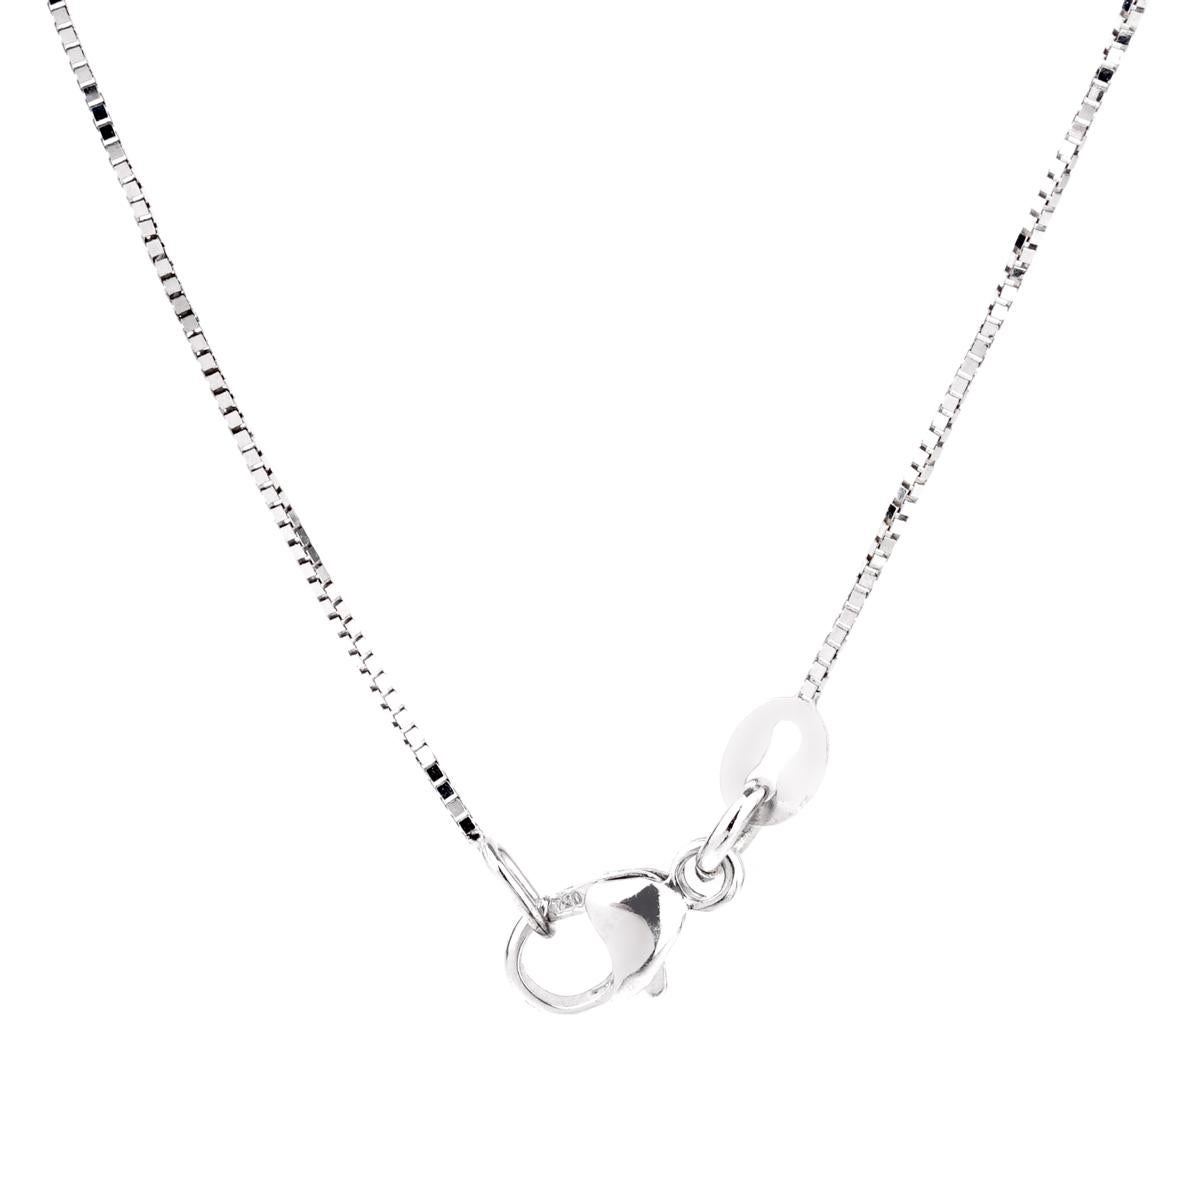 Women's or Men's Comete Gioelli Diamond Cross White Gold Necklace